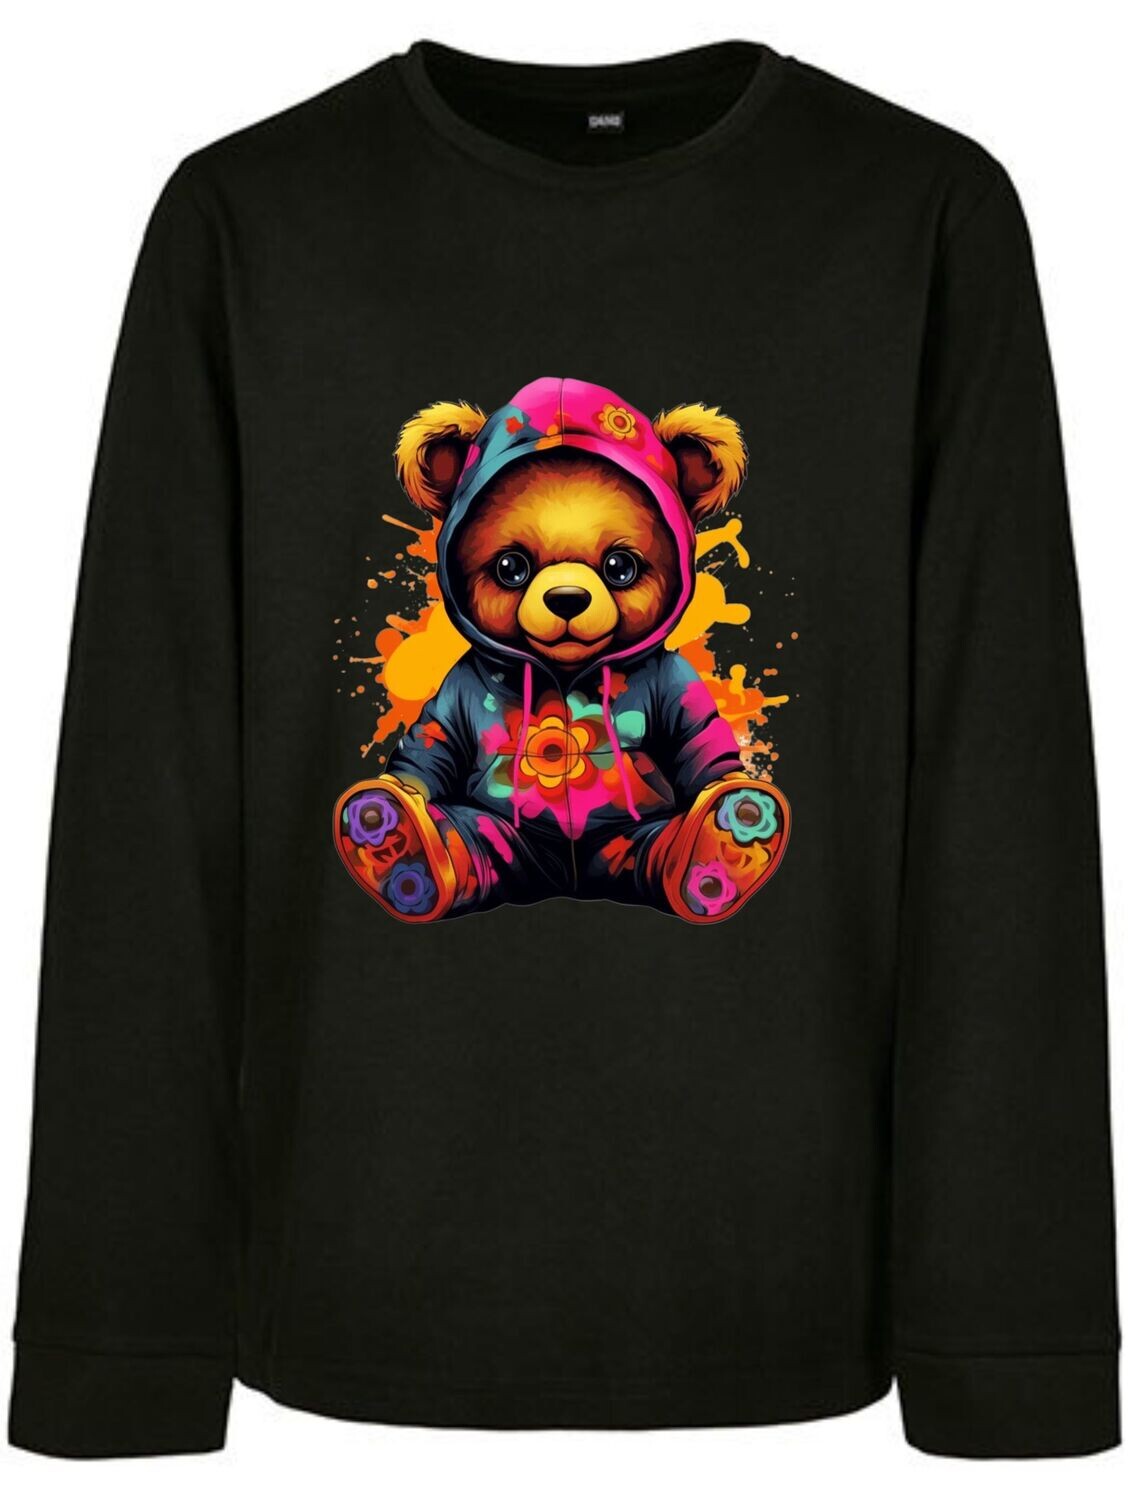 Sweatshirt Teddy Colorful